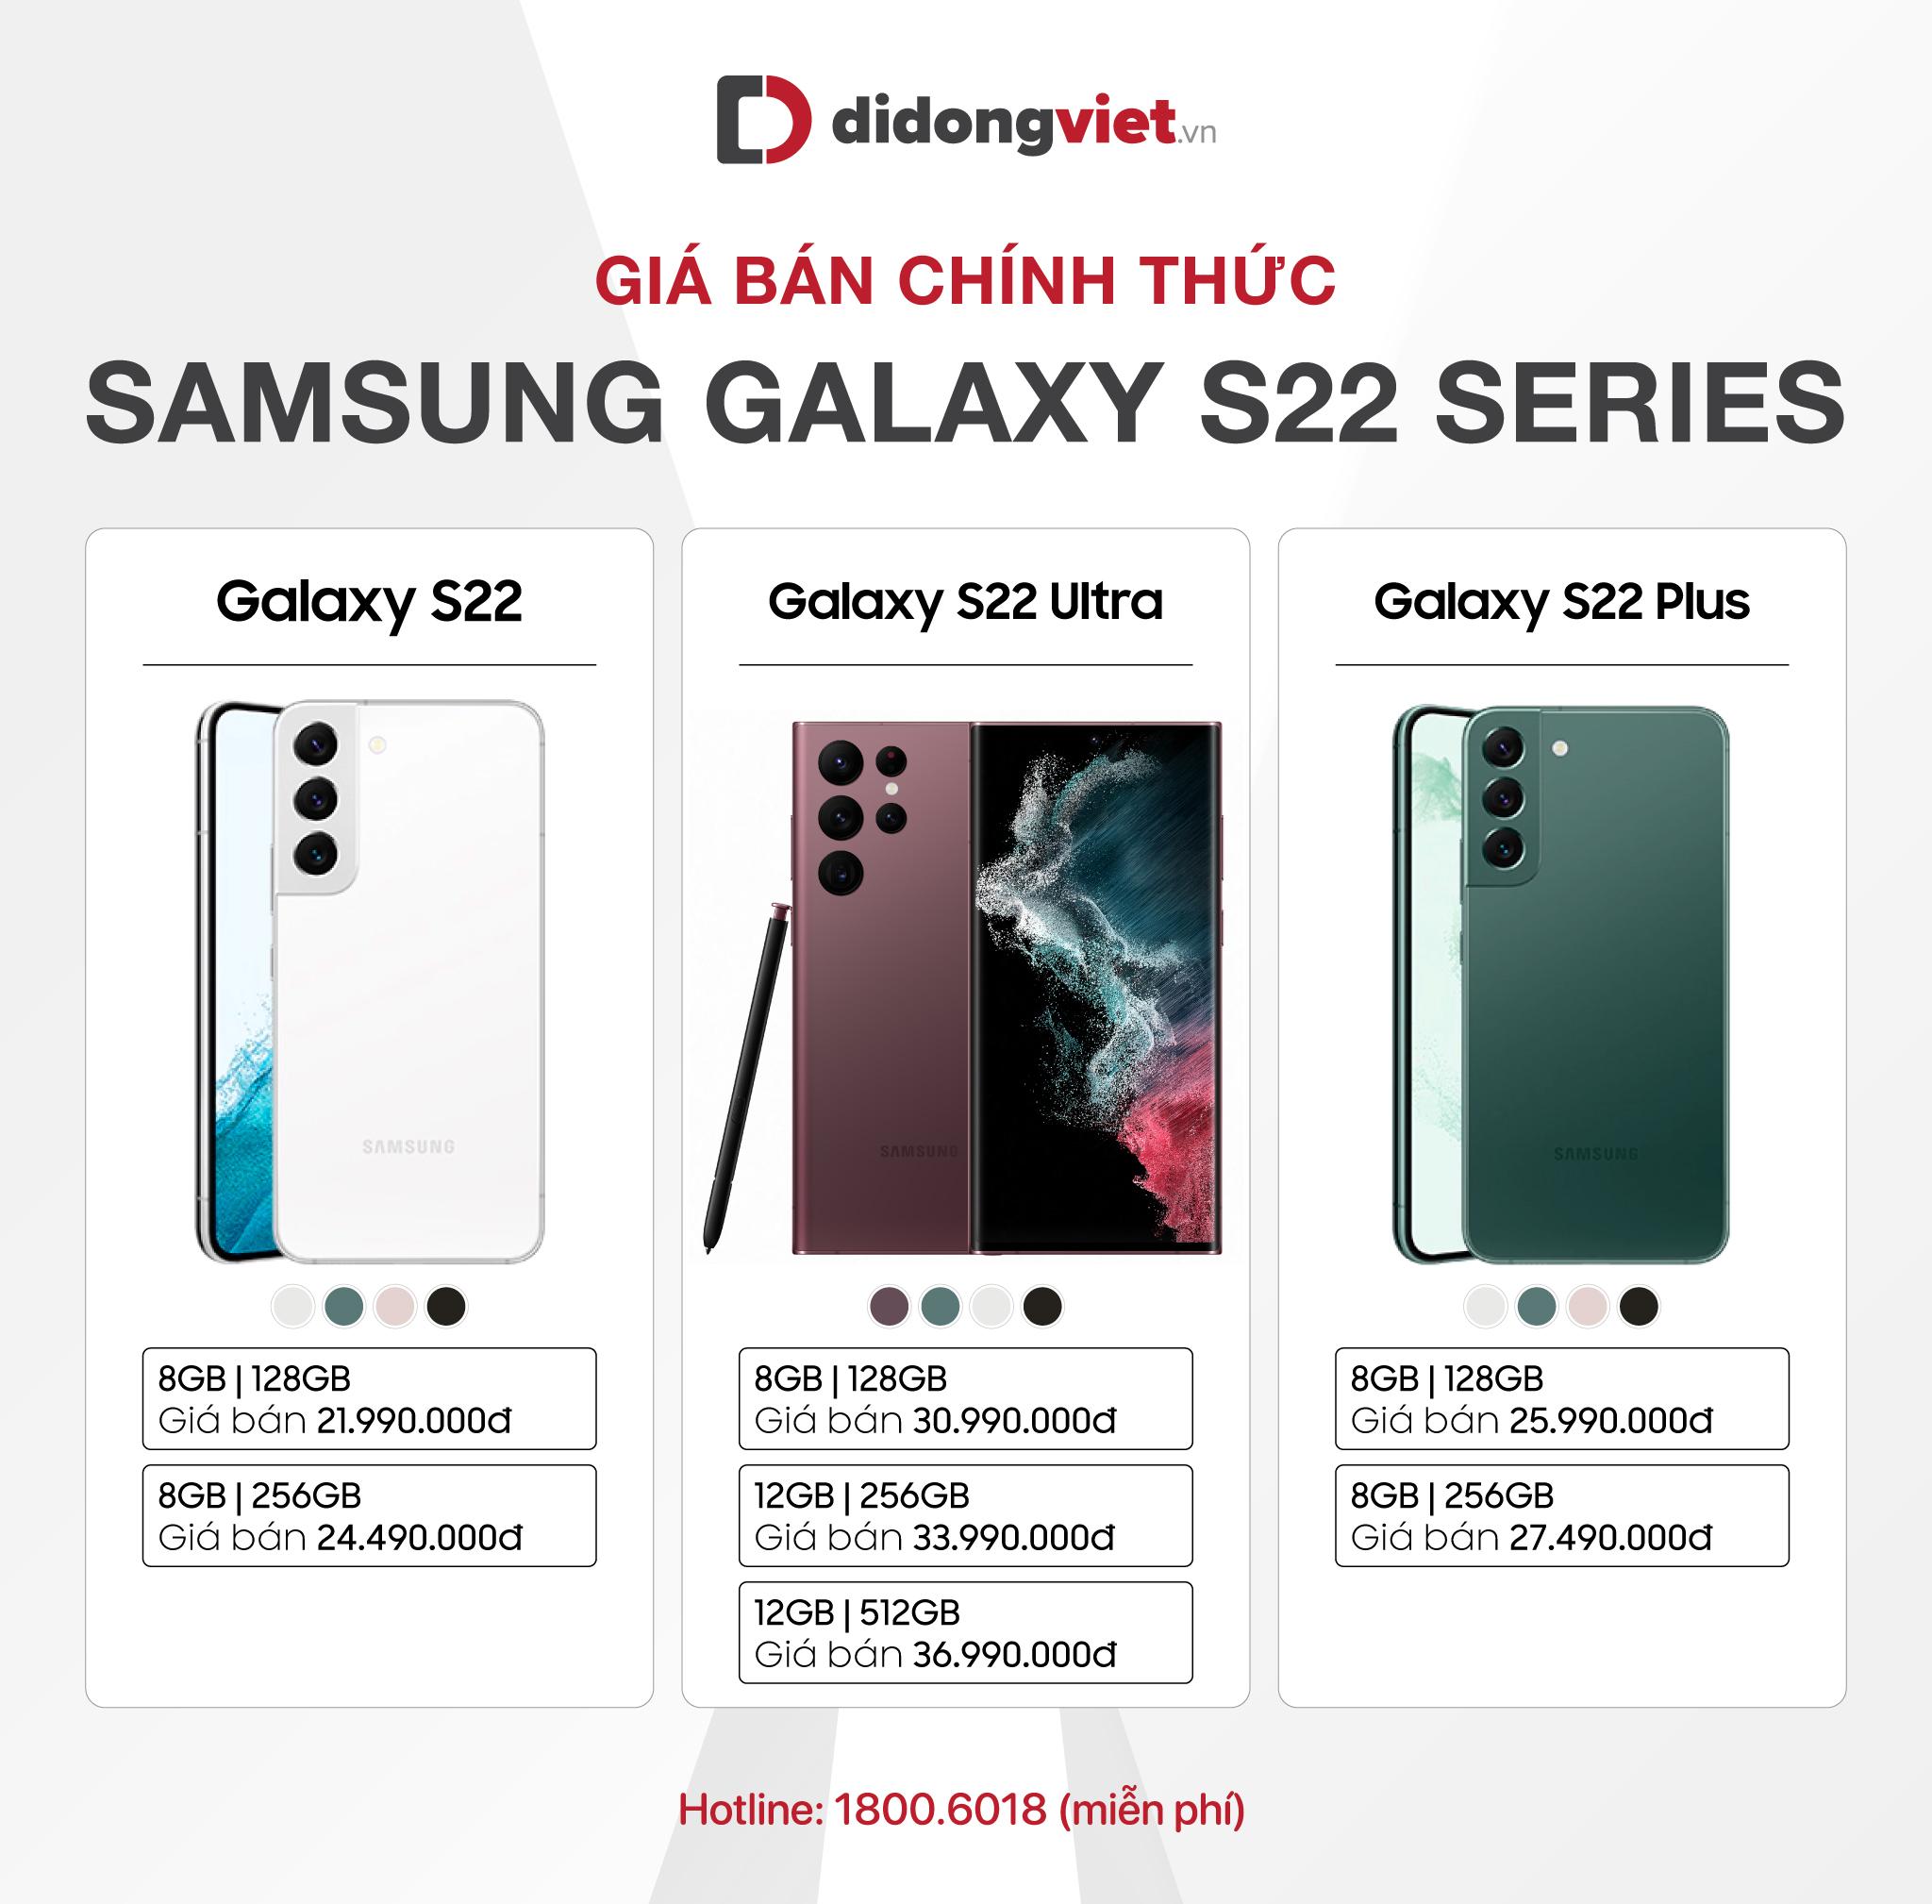 Samsung Galaxy S22 series đạt doanh số khủng ngay trong ngày đầu tiên mở bán